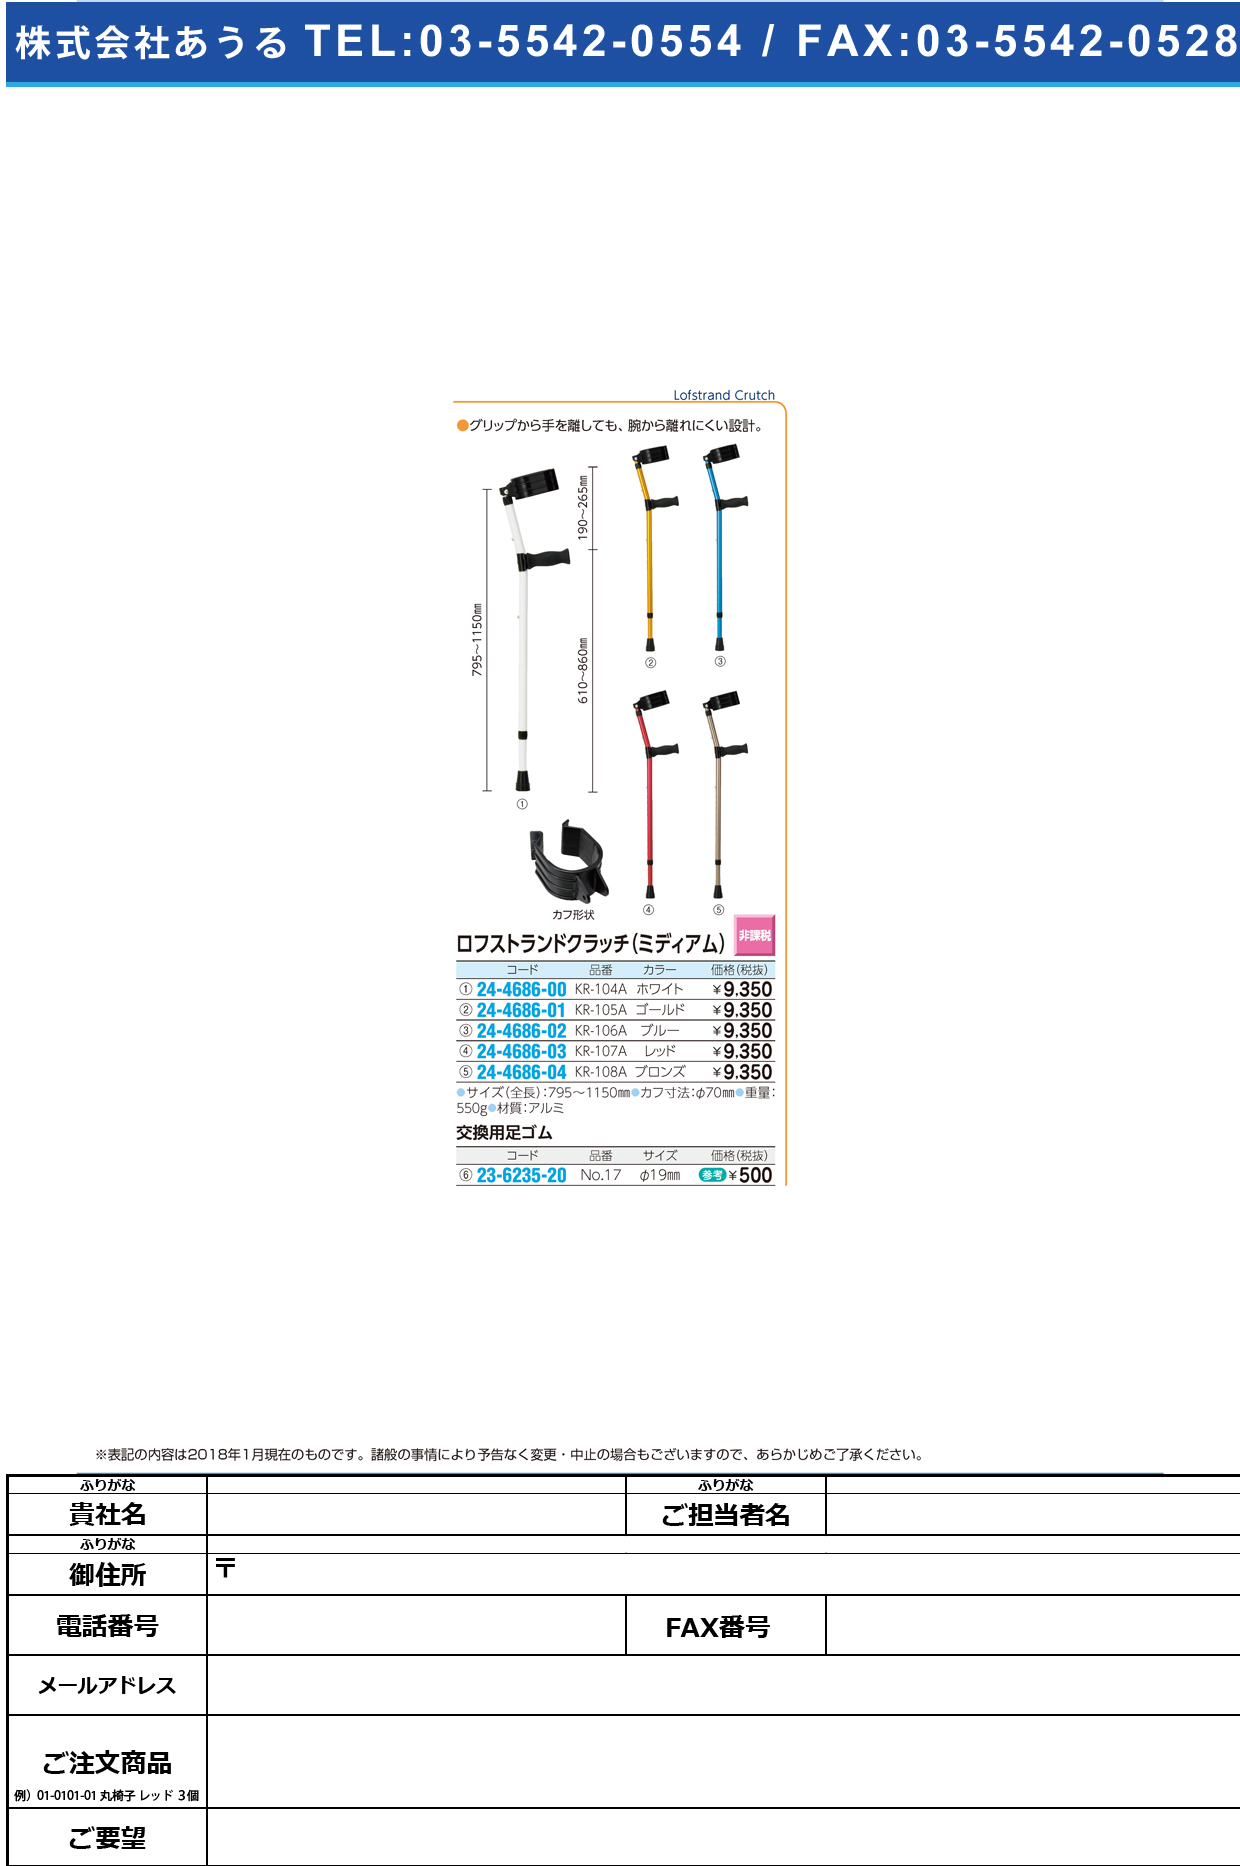 (24-4686-03)ロフストランドクラッチ（ミディアム） KR-107A(ﾚｯﾄﾞ) ﾛﾌｽﾄﾗﾝﾄﾞｸﾗｯﾁ【1本単位】【2019年カタログ商品】